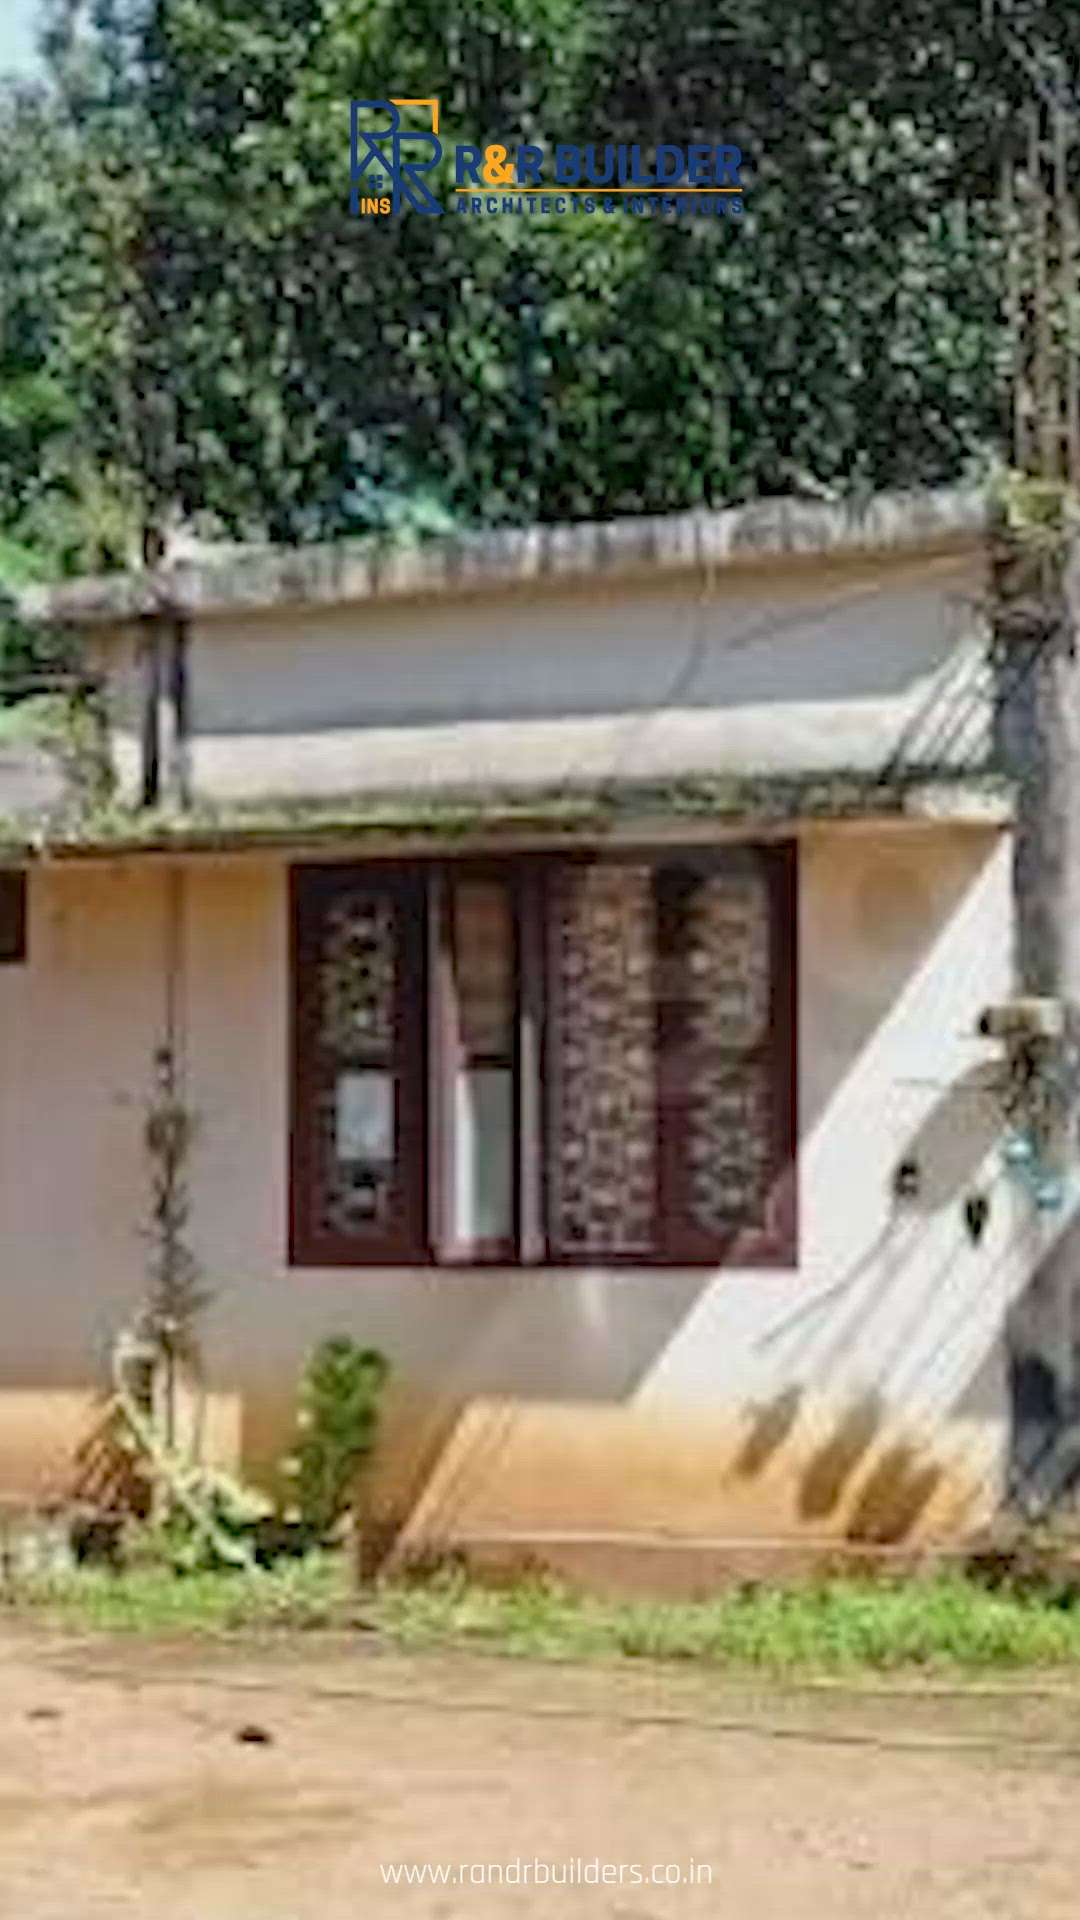 നിങ്ങളുടെ പഴയ വീടിൻറെ മുഖച്ഛായ മാറ്റാൻ ആഗ്രഹിക്കുന്നുണ്ടോ🏠✨ Thrissur, Kochi, Kottayam, Thiruvalla.  എവിടെയും FREE CONSULTATION 

15+ വർഷത്തെ സേവന പാരമ്പര്യമുള്ള R & R Architects and Interiors 
ഇപ്പോൾ തന്നെ location WHATSAPP ചെയ്യു

𝗢𝘂𝗿 𝗦𝗲𝗿𝘃𝗶𝗰𝗲𝘀:

✅ Architecture designing
✅ Structural designing
✅ Premium house construction
✅ Civil designing
✅ Civil Construction
✅ Interior designing
✅ Interior construction
✅ Landscaping
✅ Home building
✅ Interior designing

✅ Living Room Interior
✅ Bedroom Interior
✅ Kitchen Interior
✅ Dining Interior
✅ Wardrobe 

✅Unique Design
✅Affordable rates
✅100% Customisation
✅100% Customised design
🎯For Supports -
🟢📱http://wasap.my/+919747027517 
📲 +919495128527 
📧 insrandrbuilders@gmail.com 
🌐 www.randrbuilders.co.in 

Happy Homes 🏠 Happy HomeOwners 🤩

#thrissurbuilders #thrissur #throwback #cochin #kottayam #kottyamkaran #thiruvalla #thiruvallakaran #buildersthrissur #homeinteriordesi#dreamhome #homedesign #construction #interiordesign #buil